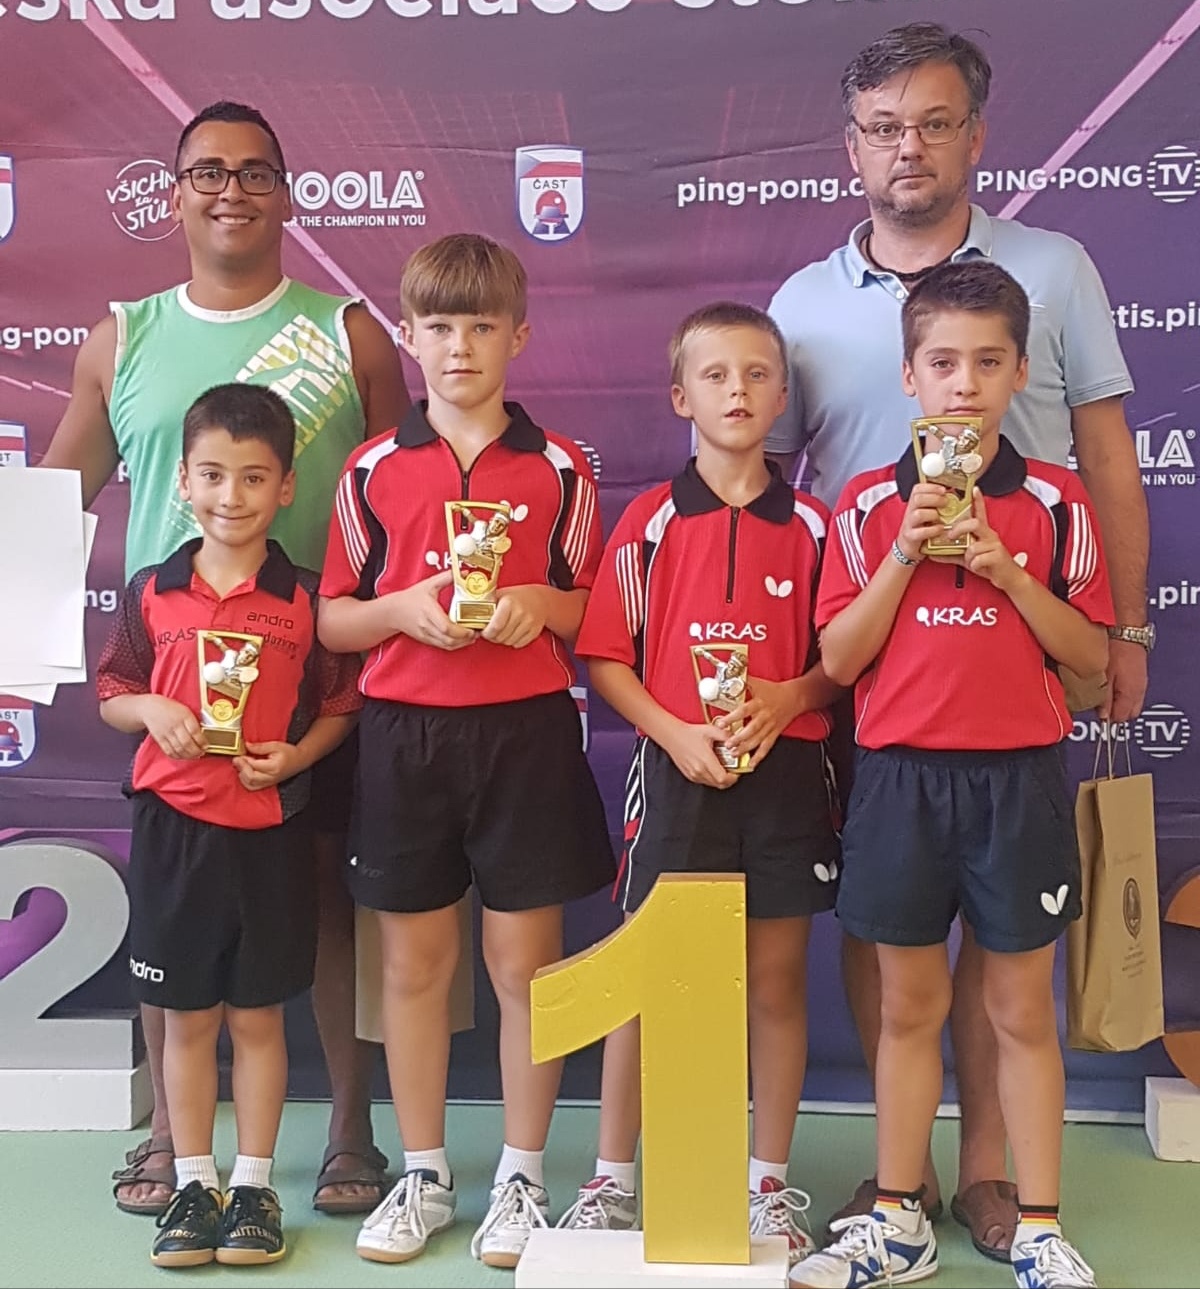 Ask Kras vince a torneo giovanile di Olomouc 2020